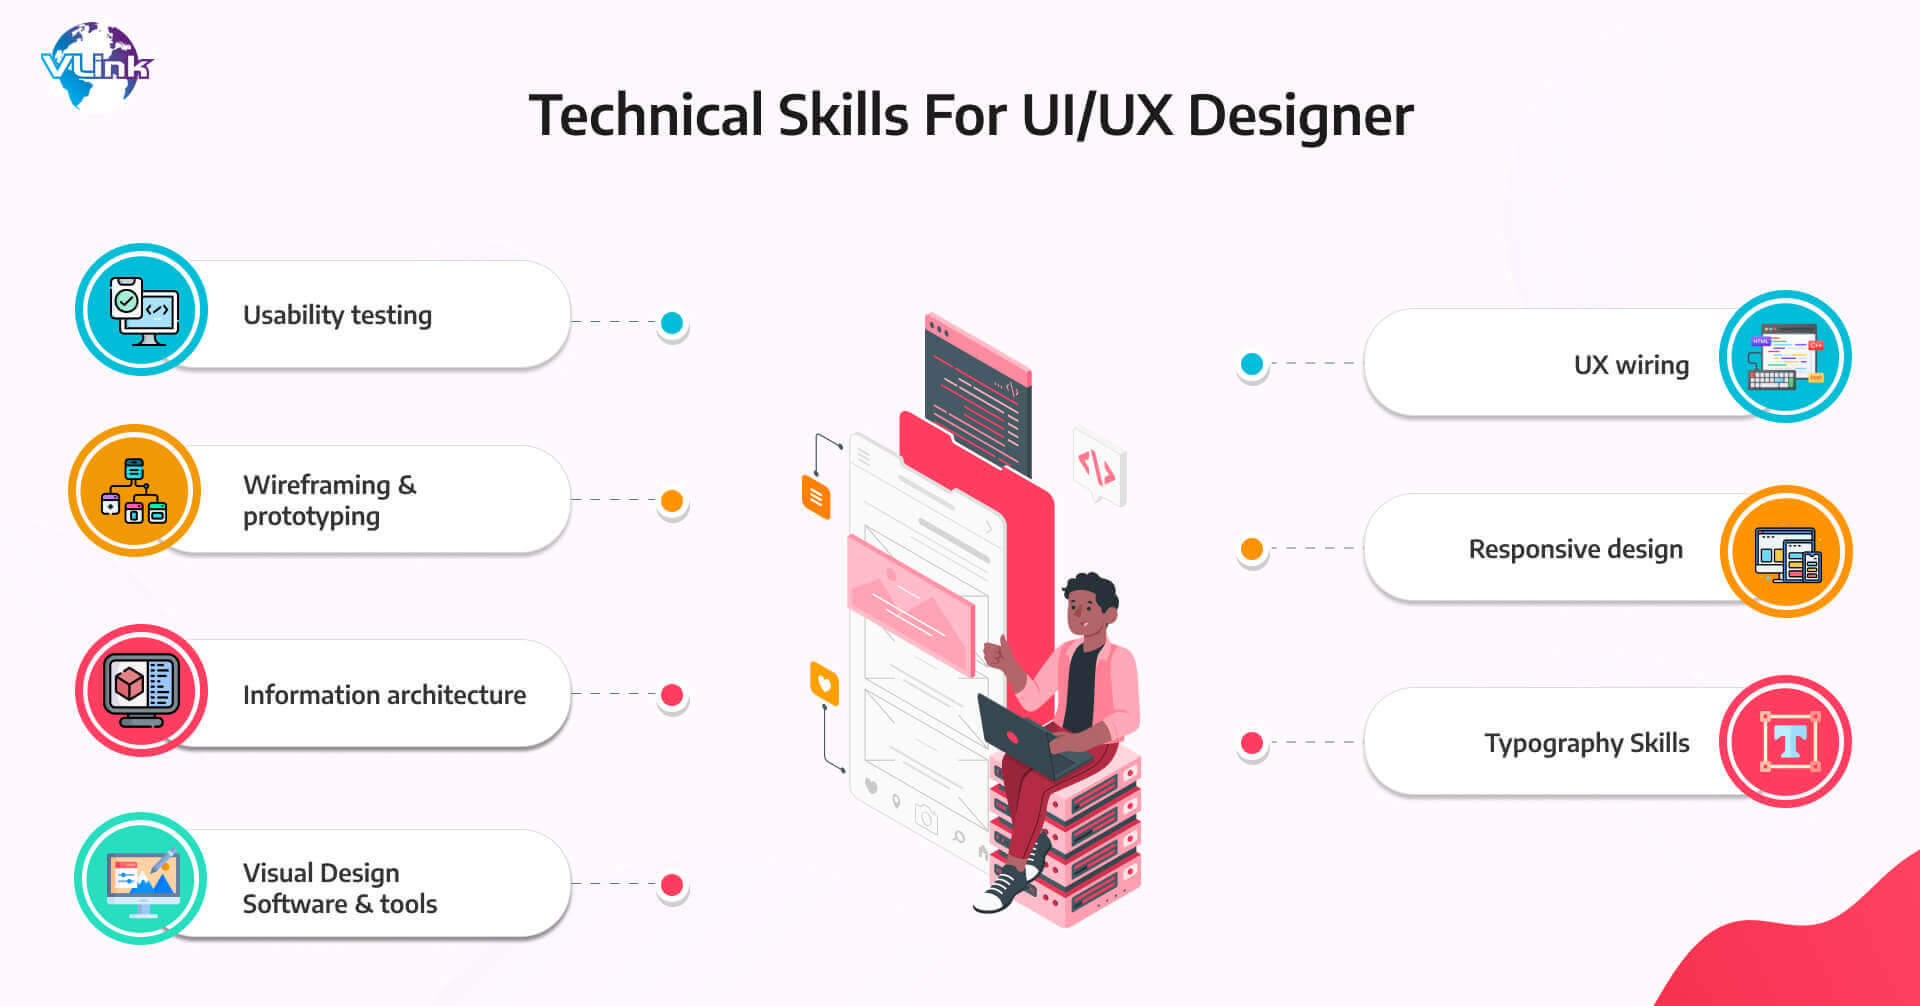 Technical Skills For UIUX Designer